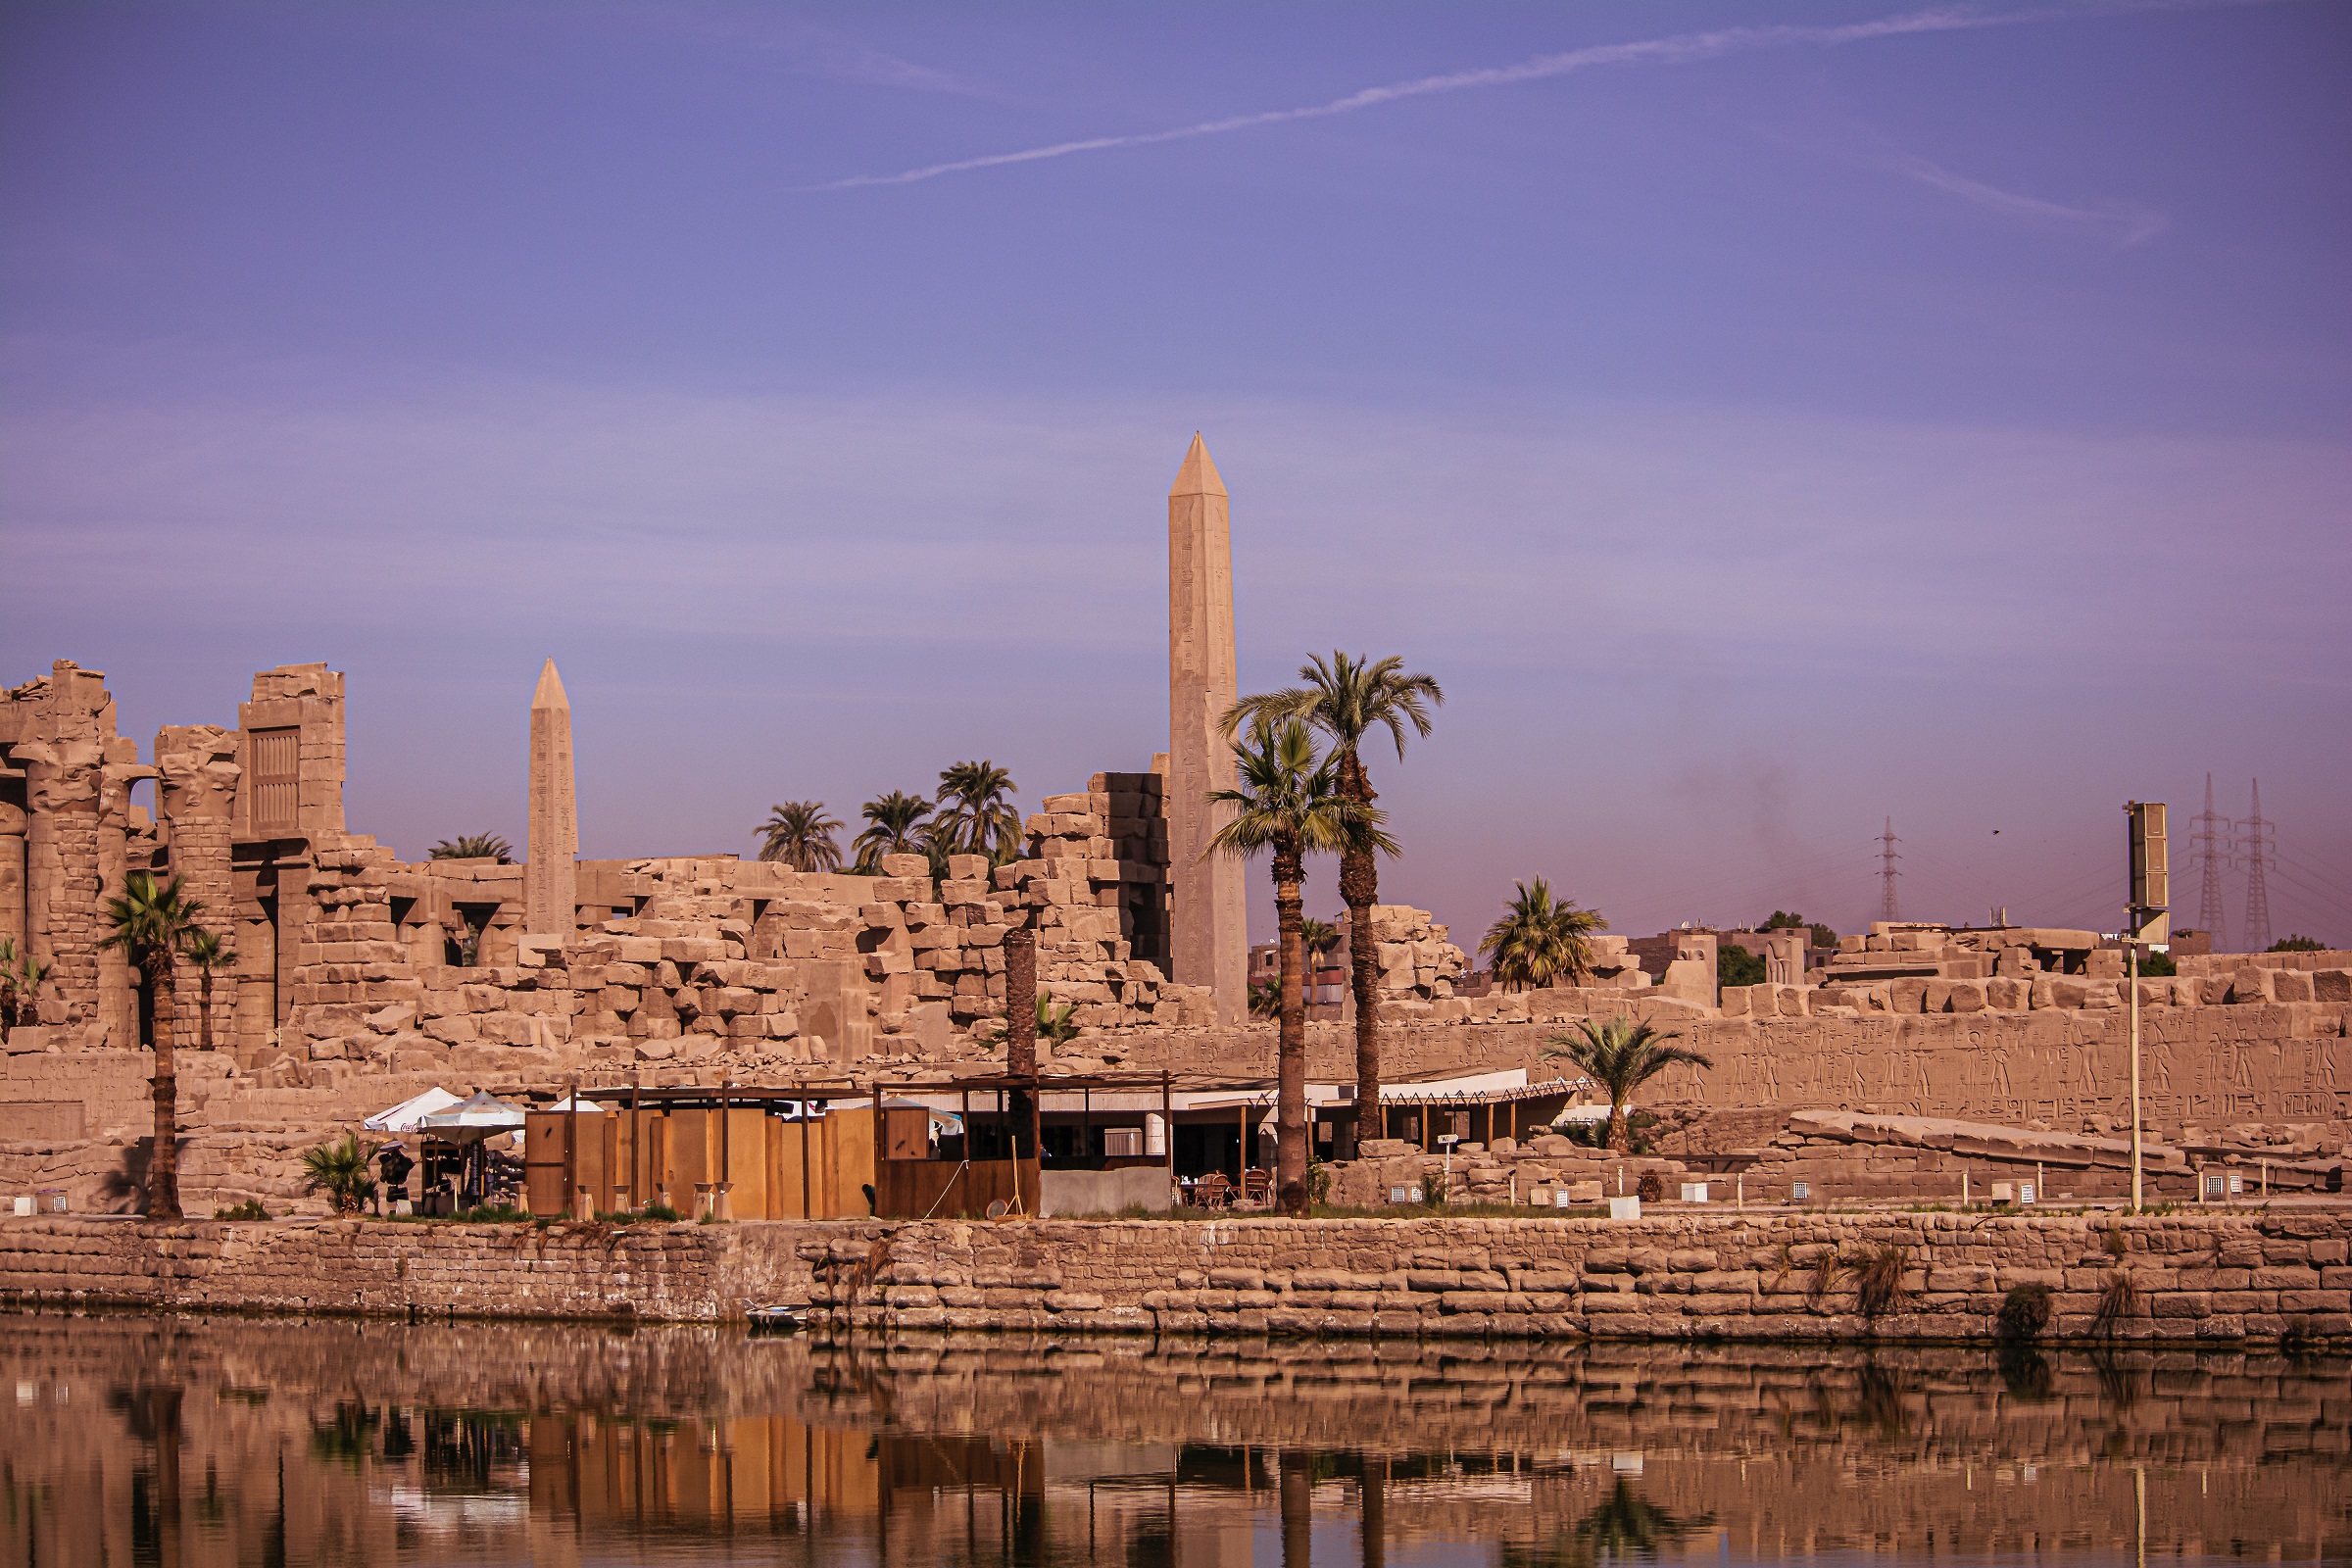 Day 08: Temples of Karnak - Luxor